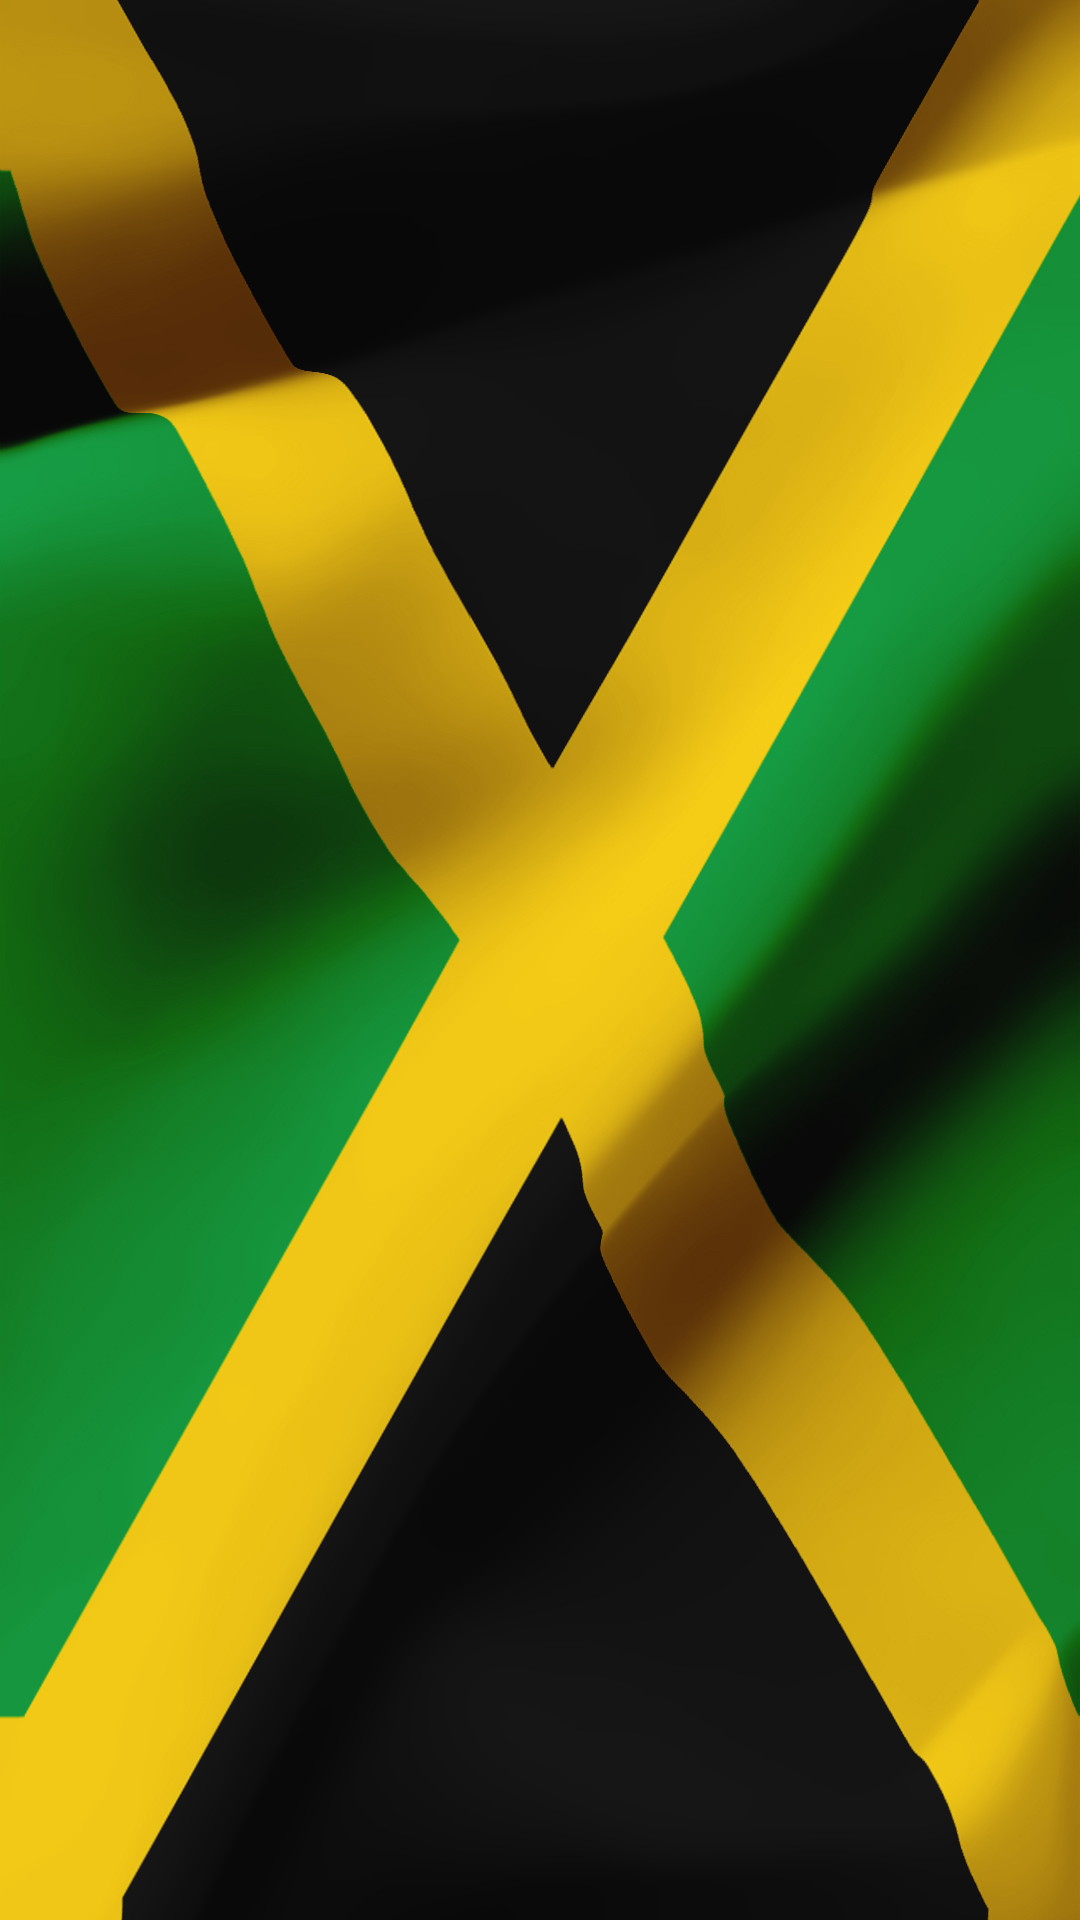 画像をダウンロード ジャマイカ 国旗 画像